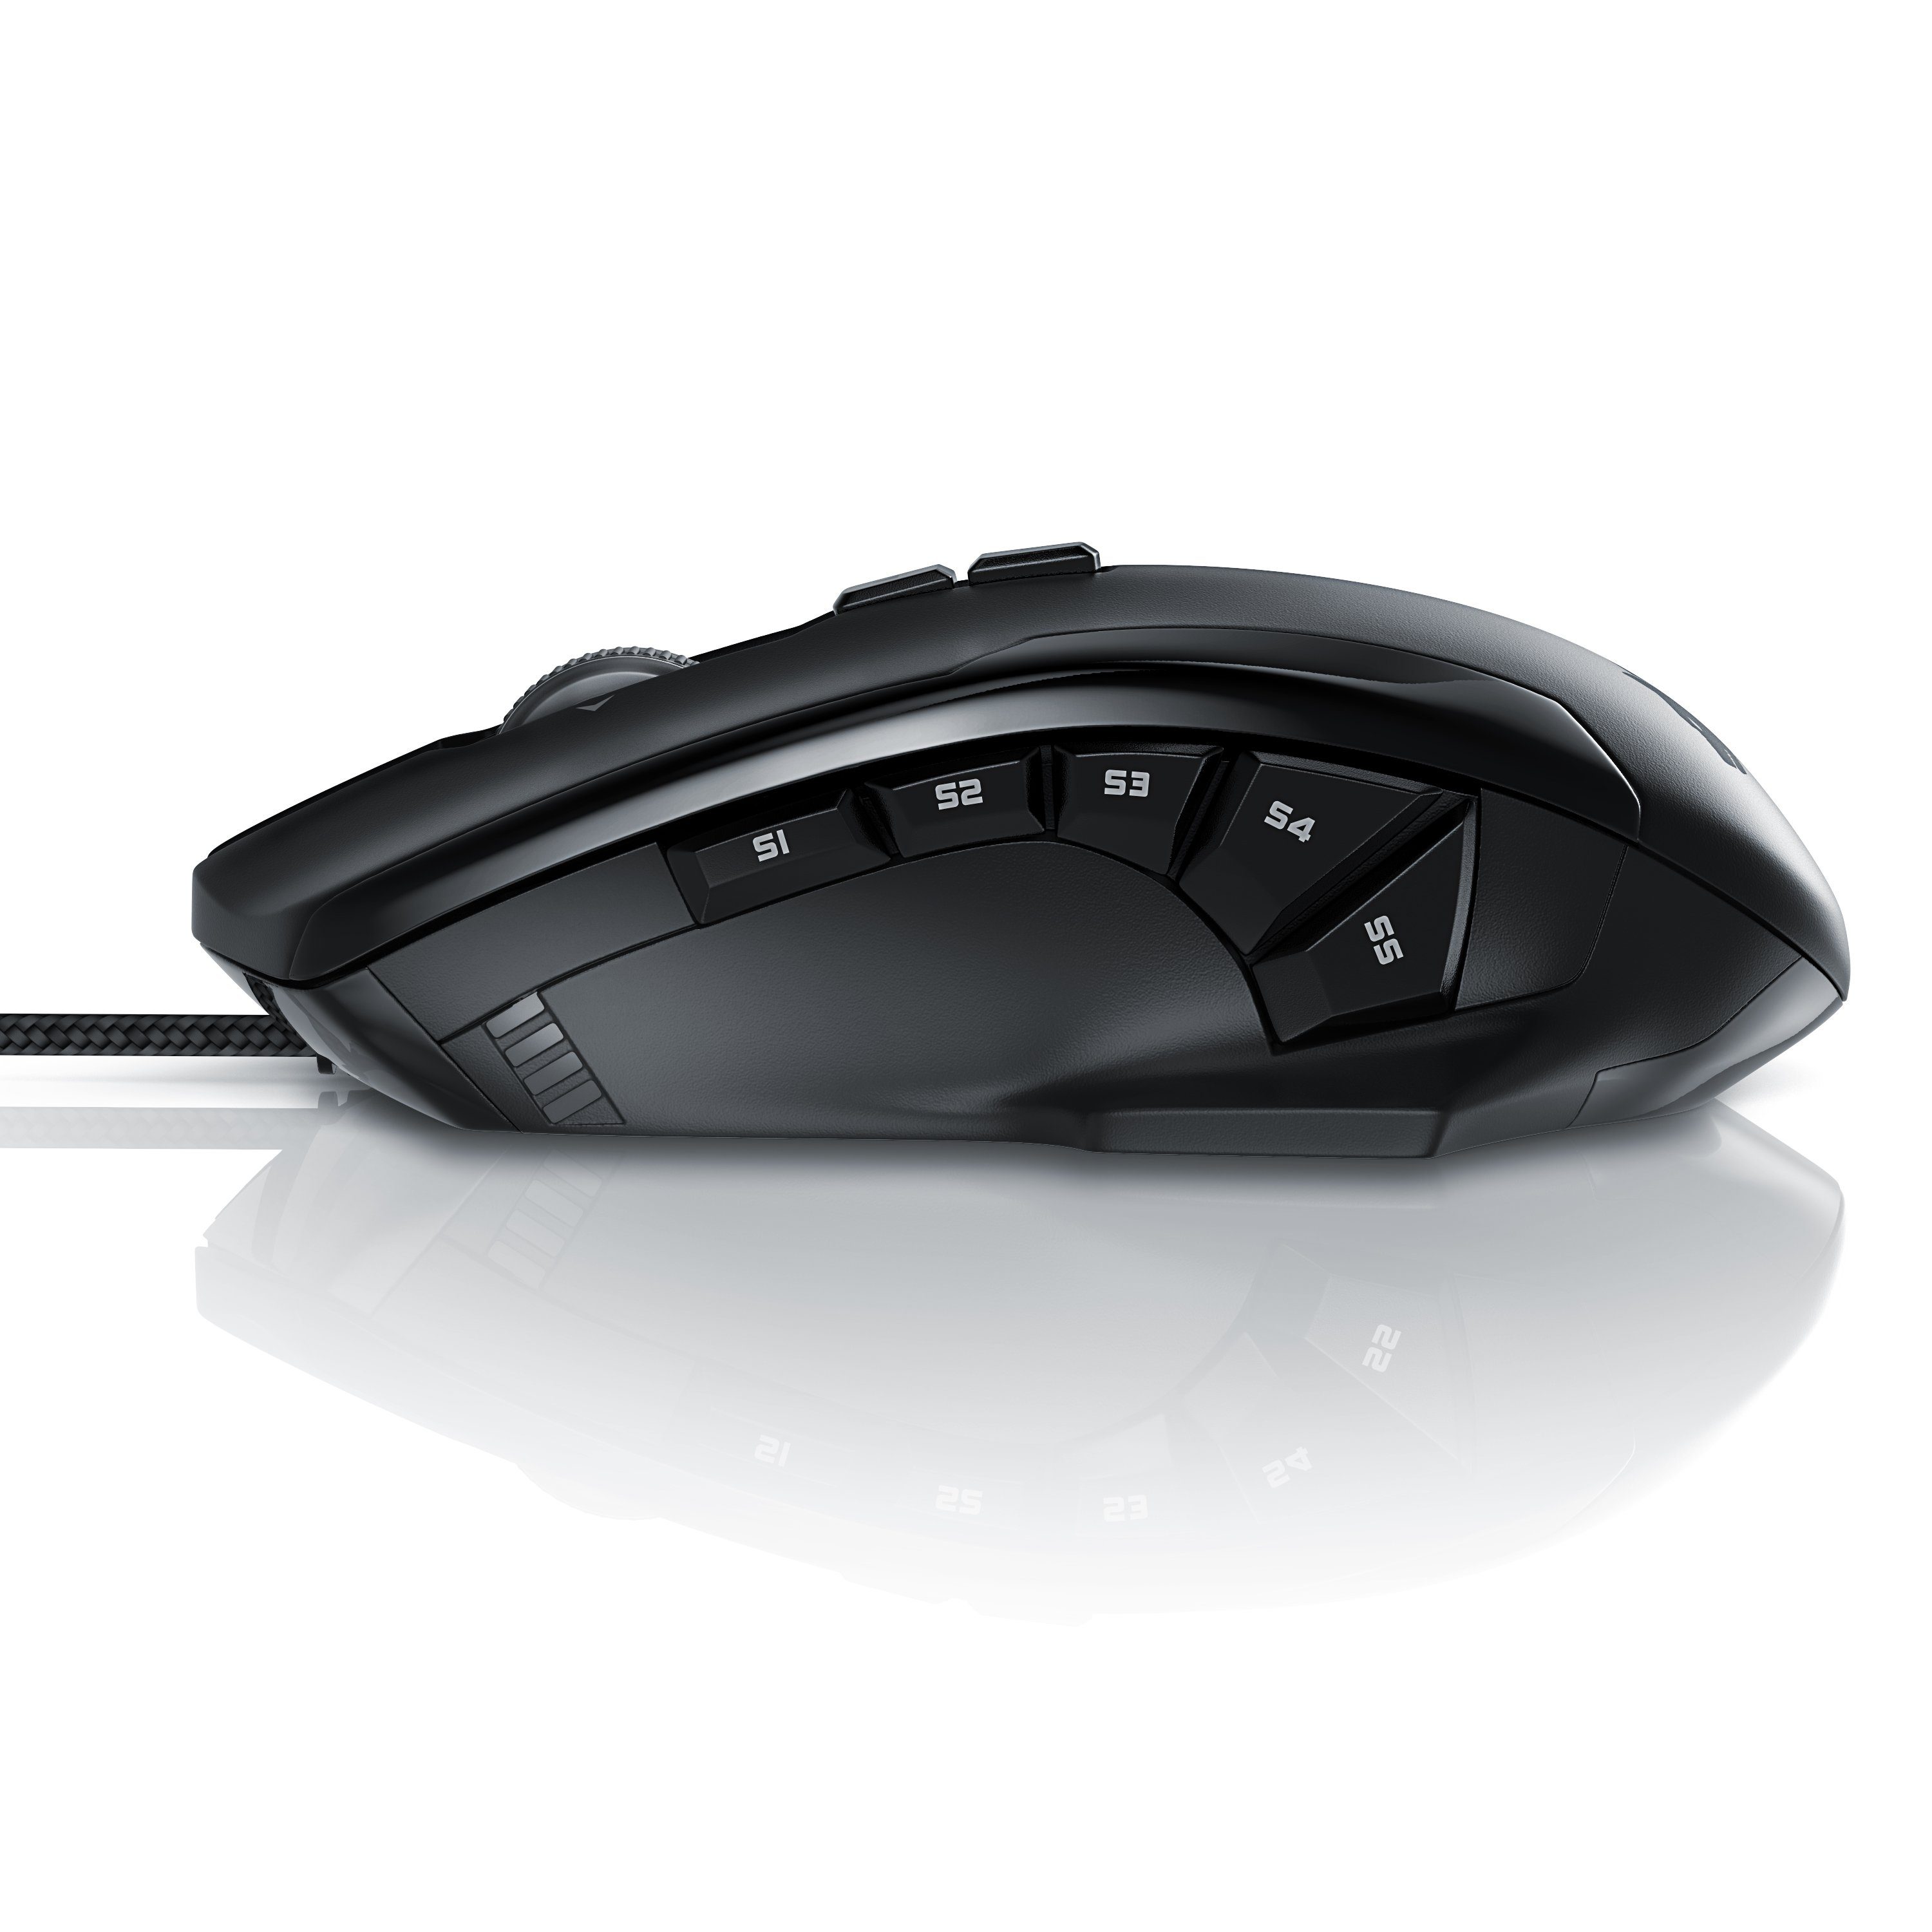 Titanwolf Gaming-Maus (kabelgebunden, 1000 dpi, RGB mit LEDs, 10800dpi, USB Gaming Mouse Laser Gewichts-Justierung)